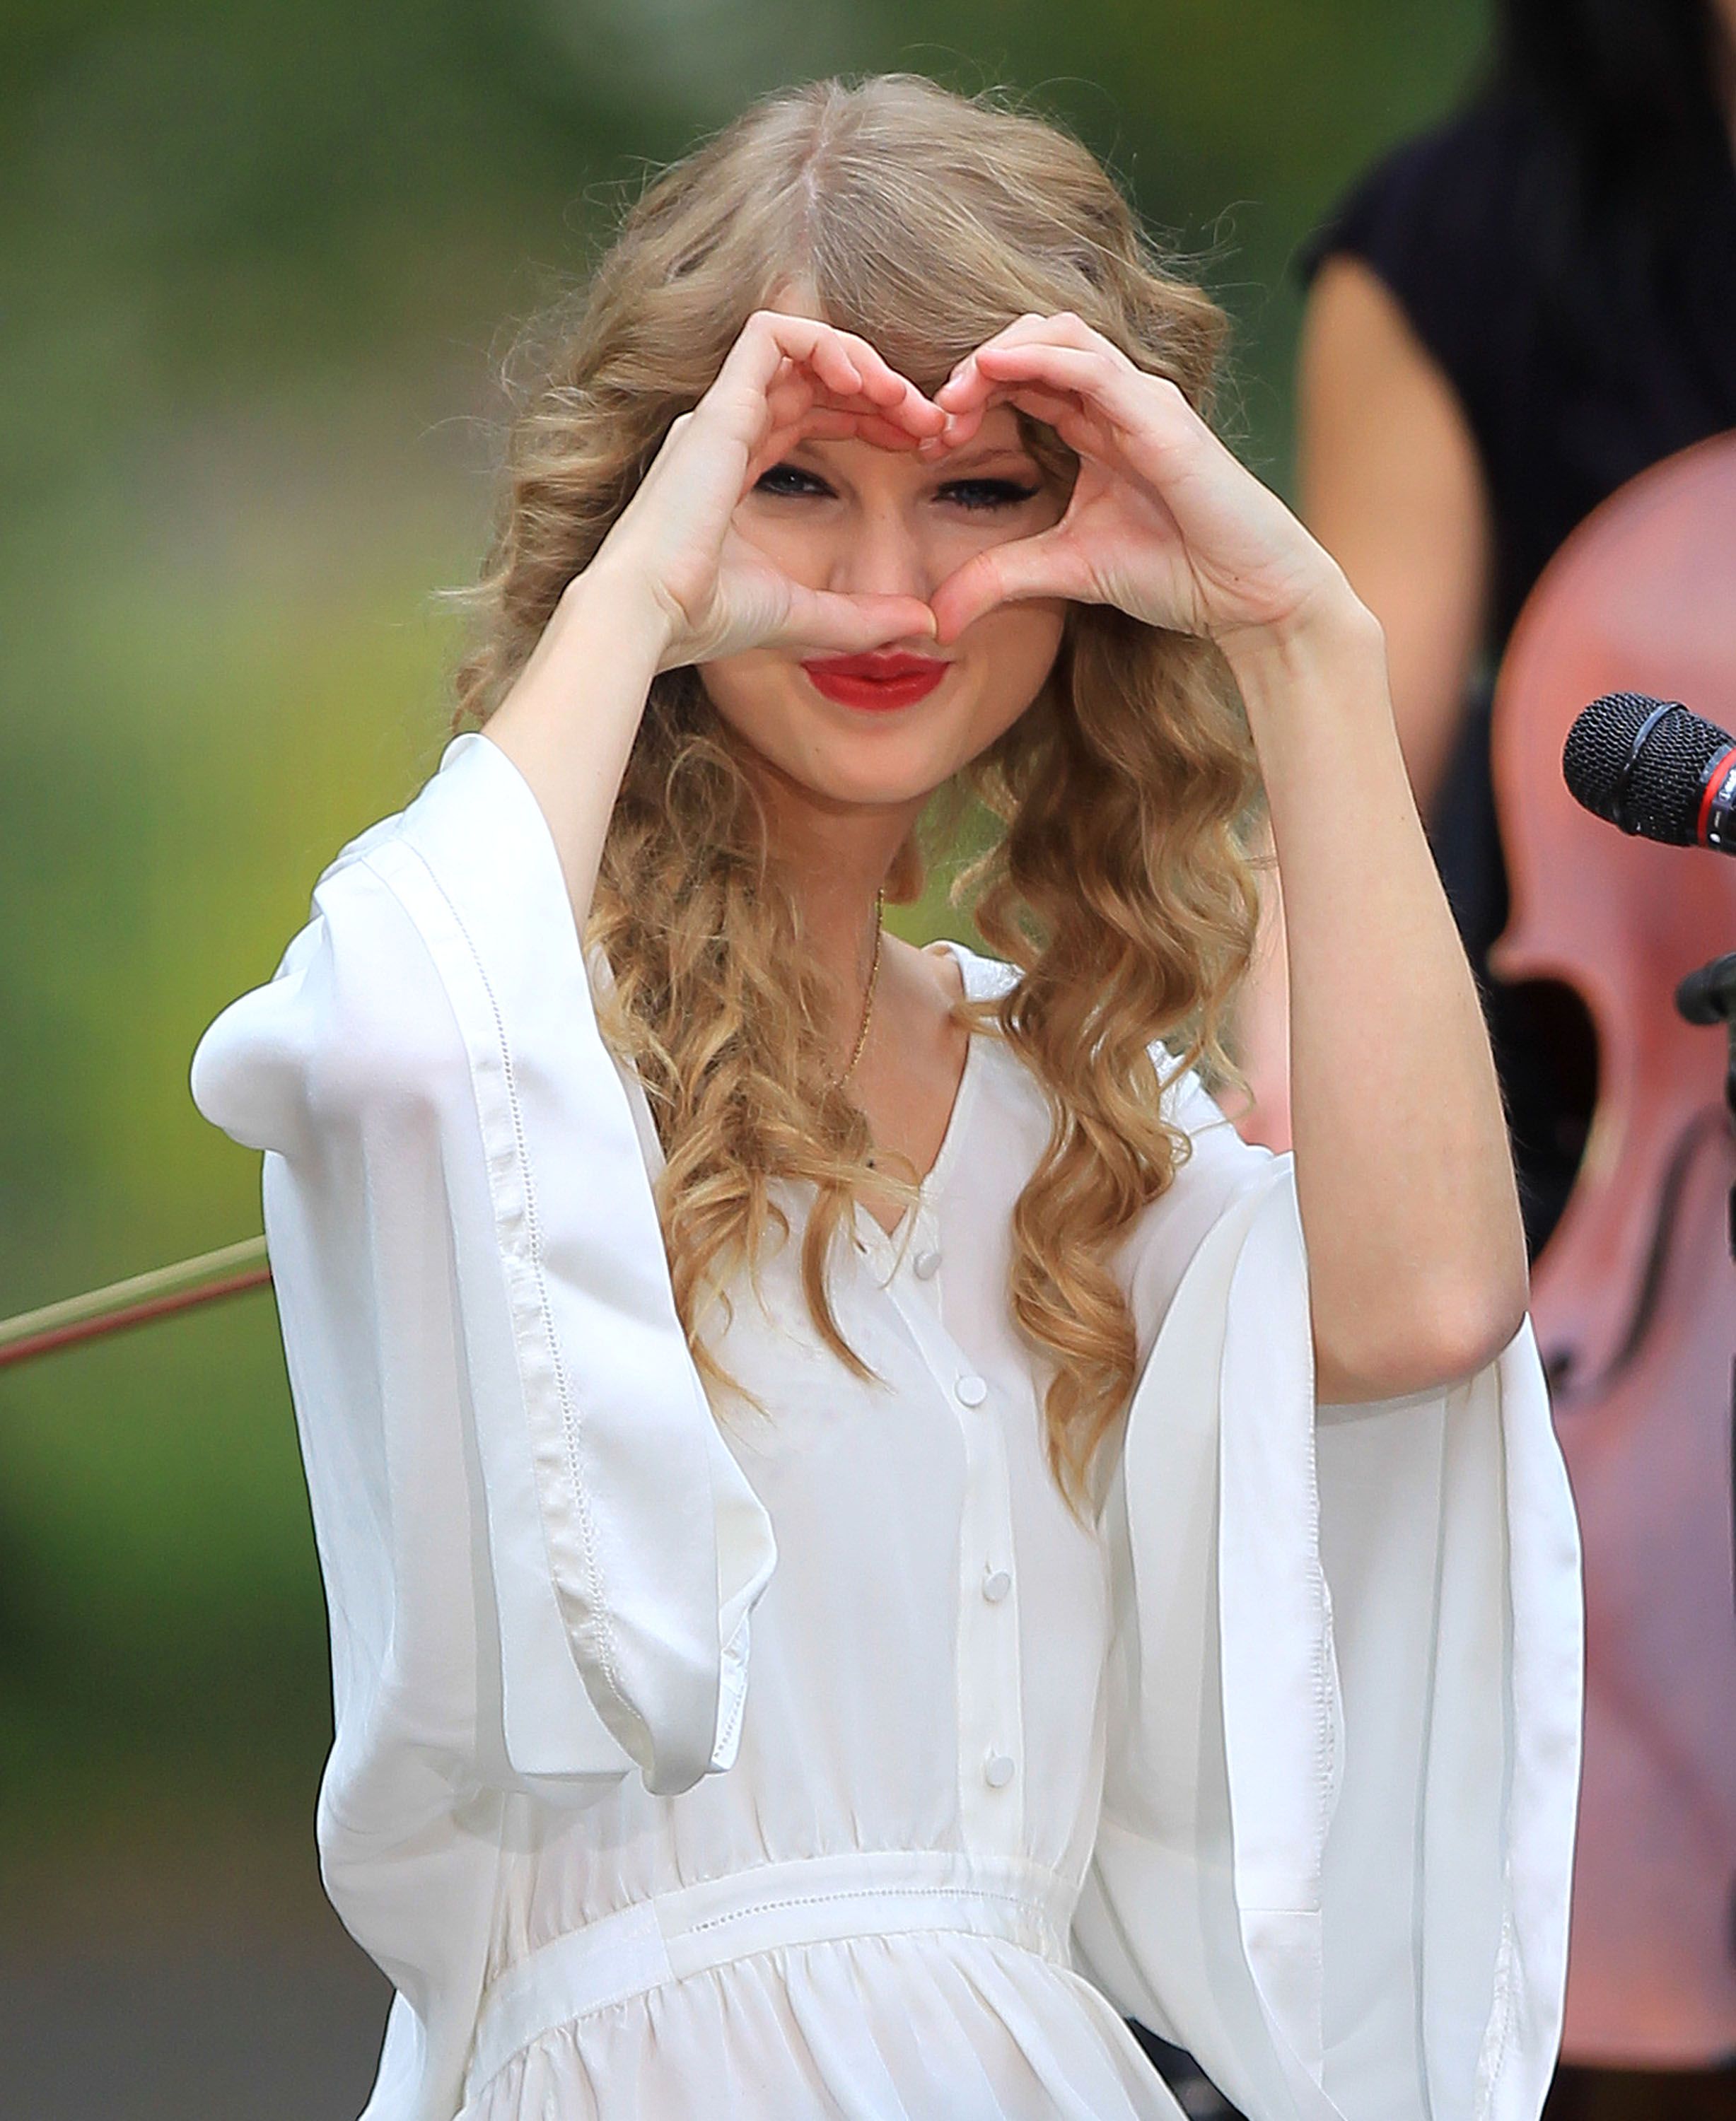 Celebrity Taylor Swift Wallpaper